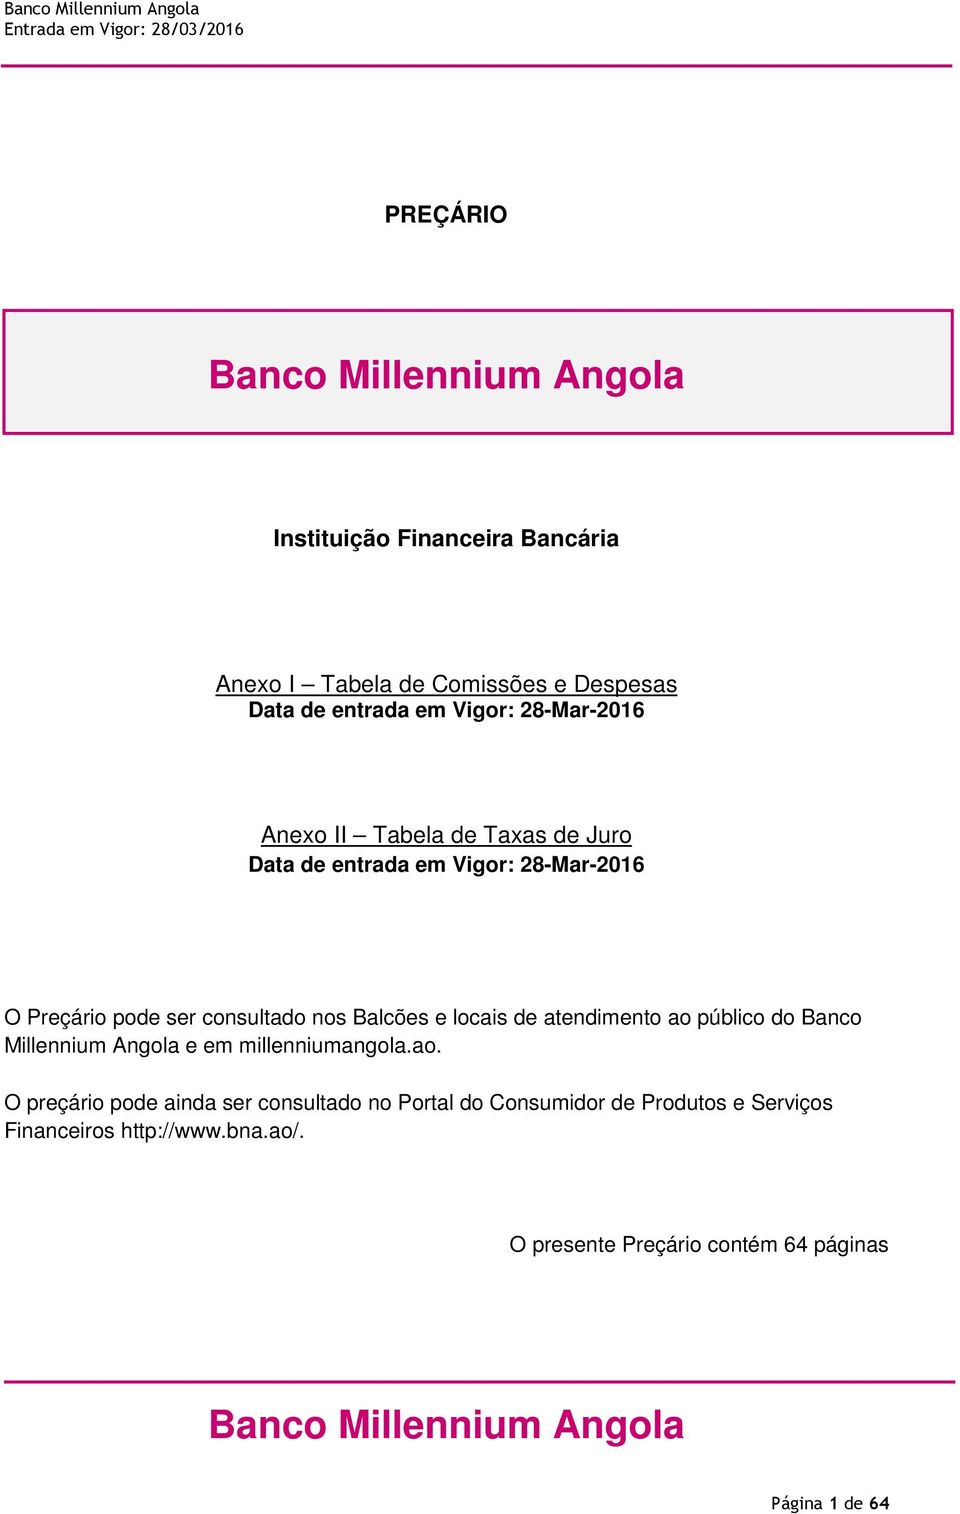 atendimento ao público do Banco Millennium Angola e em millenniumangola.ao. O preçário pode ainda ser consultado no Portal do Consumidor de Produtos e Serviços Financeiros http://www.